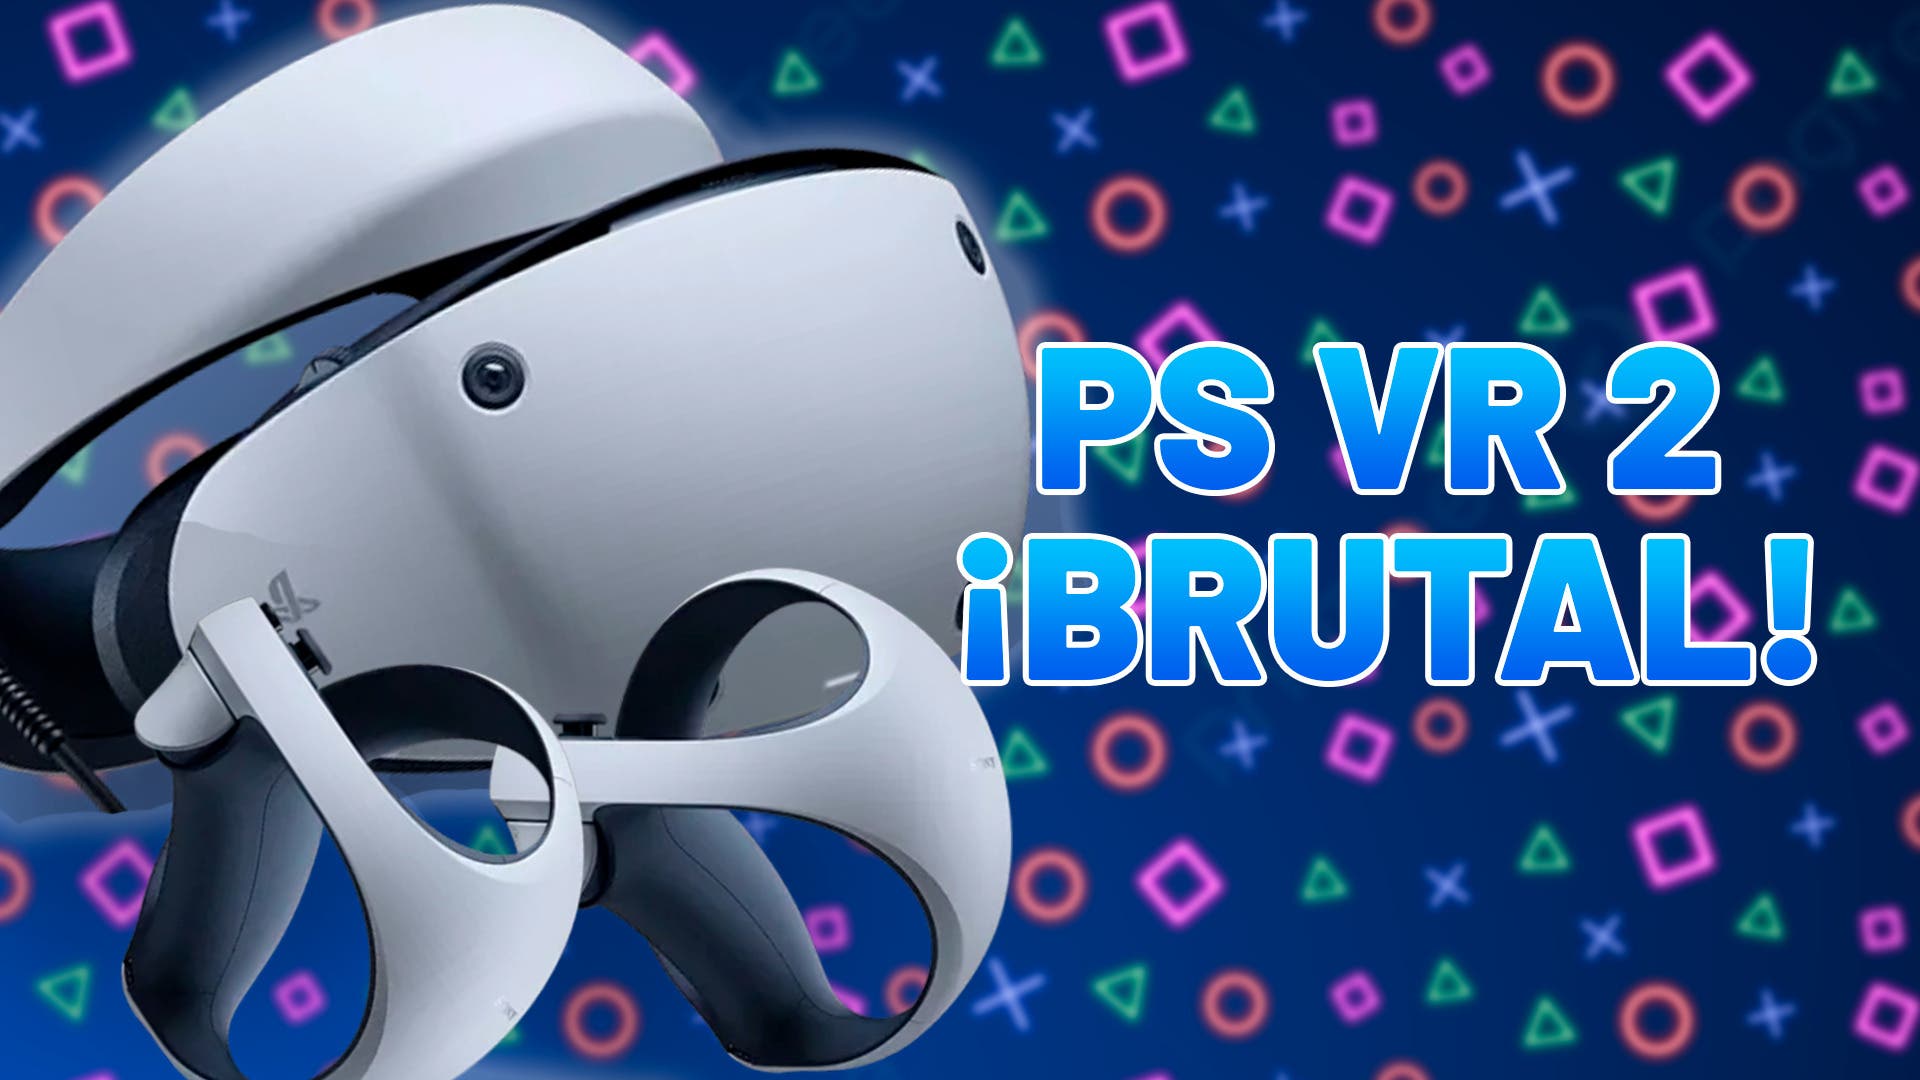 Las gafas de realidad virtual para PS5 te permitirán ver el